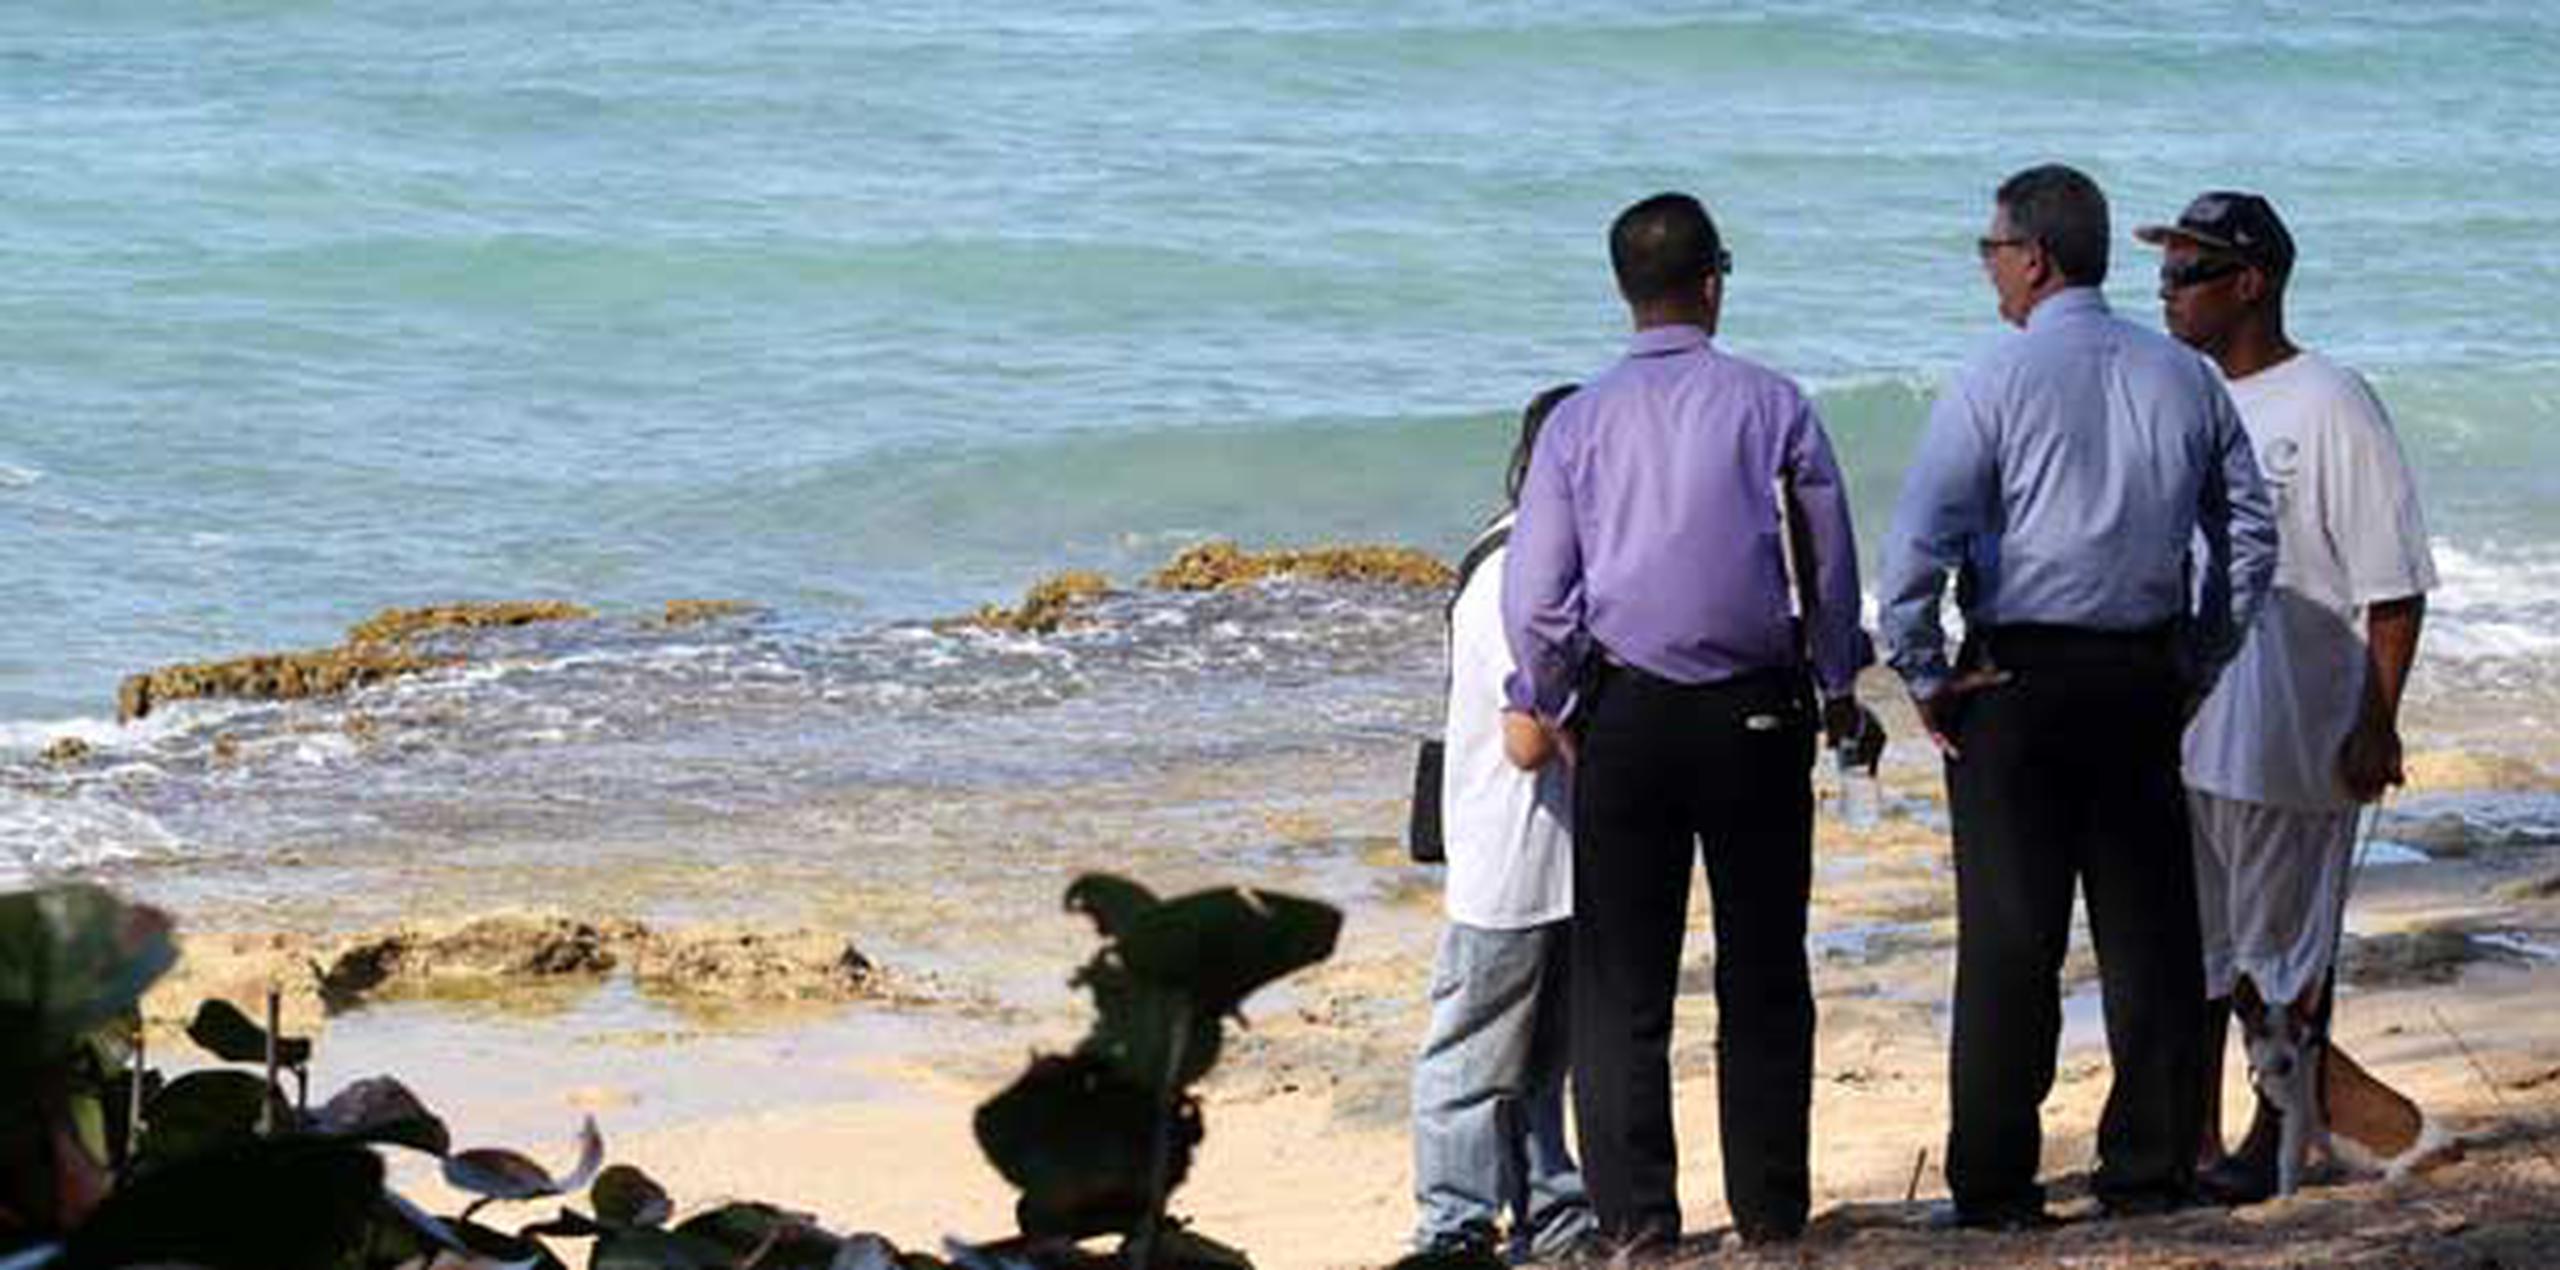 Buzos de la Policía localizaron el cuerpo en aguas próximas a la playa Mar Chiquita, en Manatí.  (juan.martinez@gfrmedia.com)